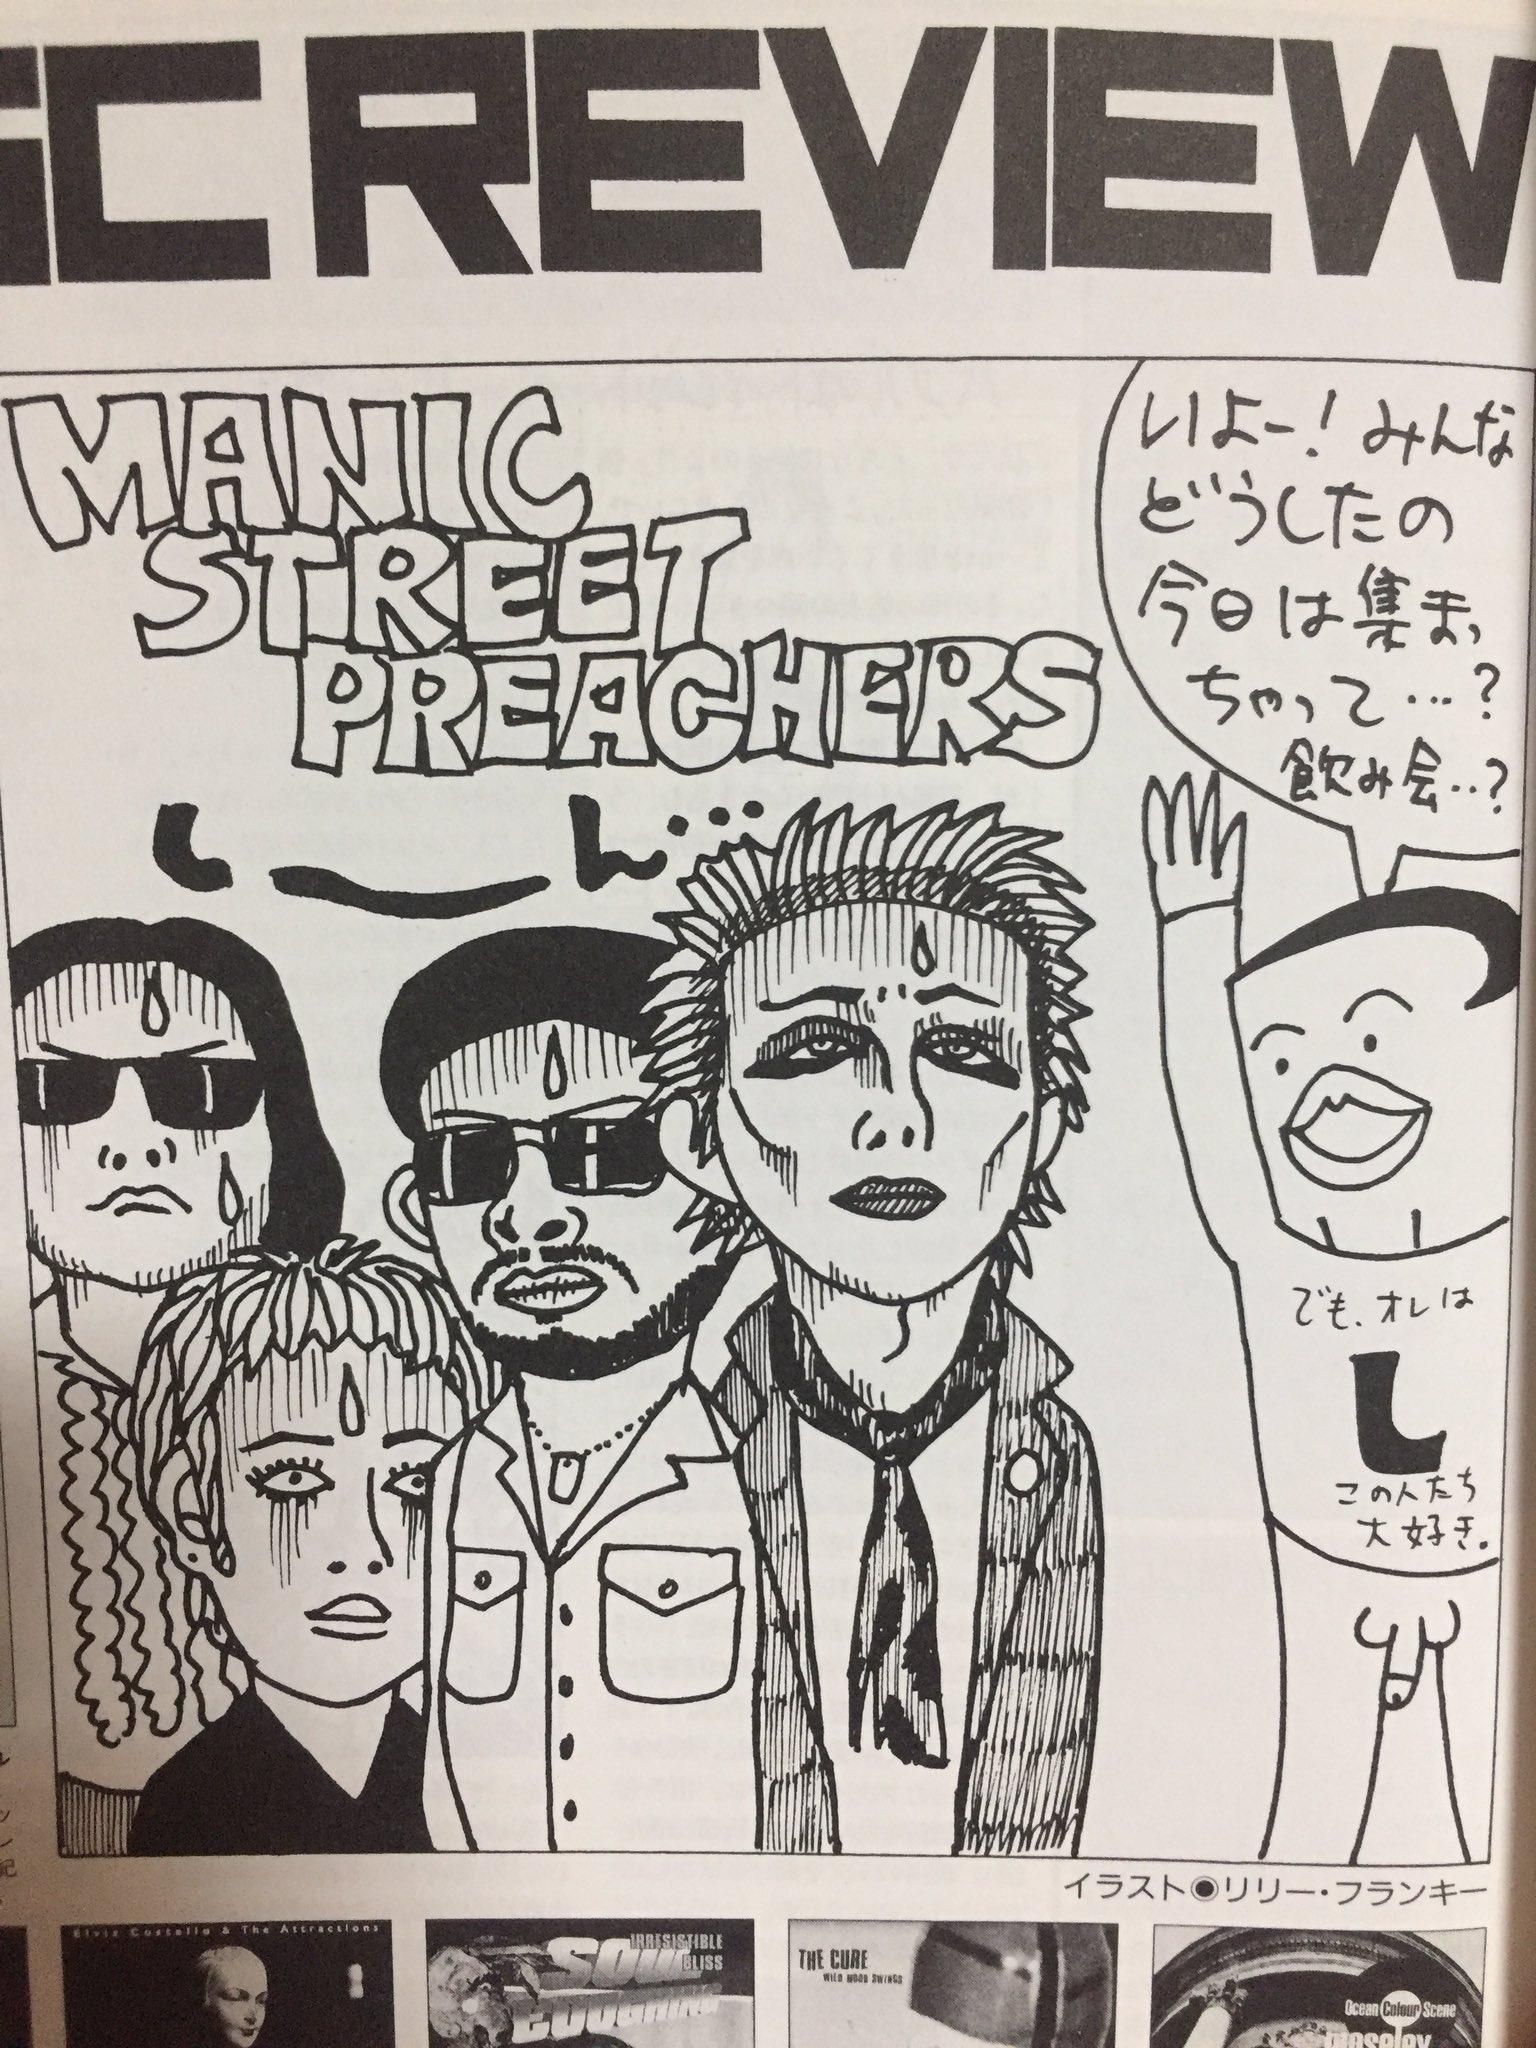 煮え湯飲み太郎 90年代にクロスビートを読んでた人間にとってリリー フランキーはヘンなイラストを描くオジサン Manicstreetpreachers マニックス T Co H3mcwxadd3 Twitter